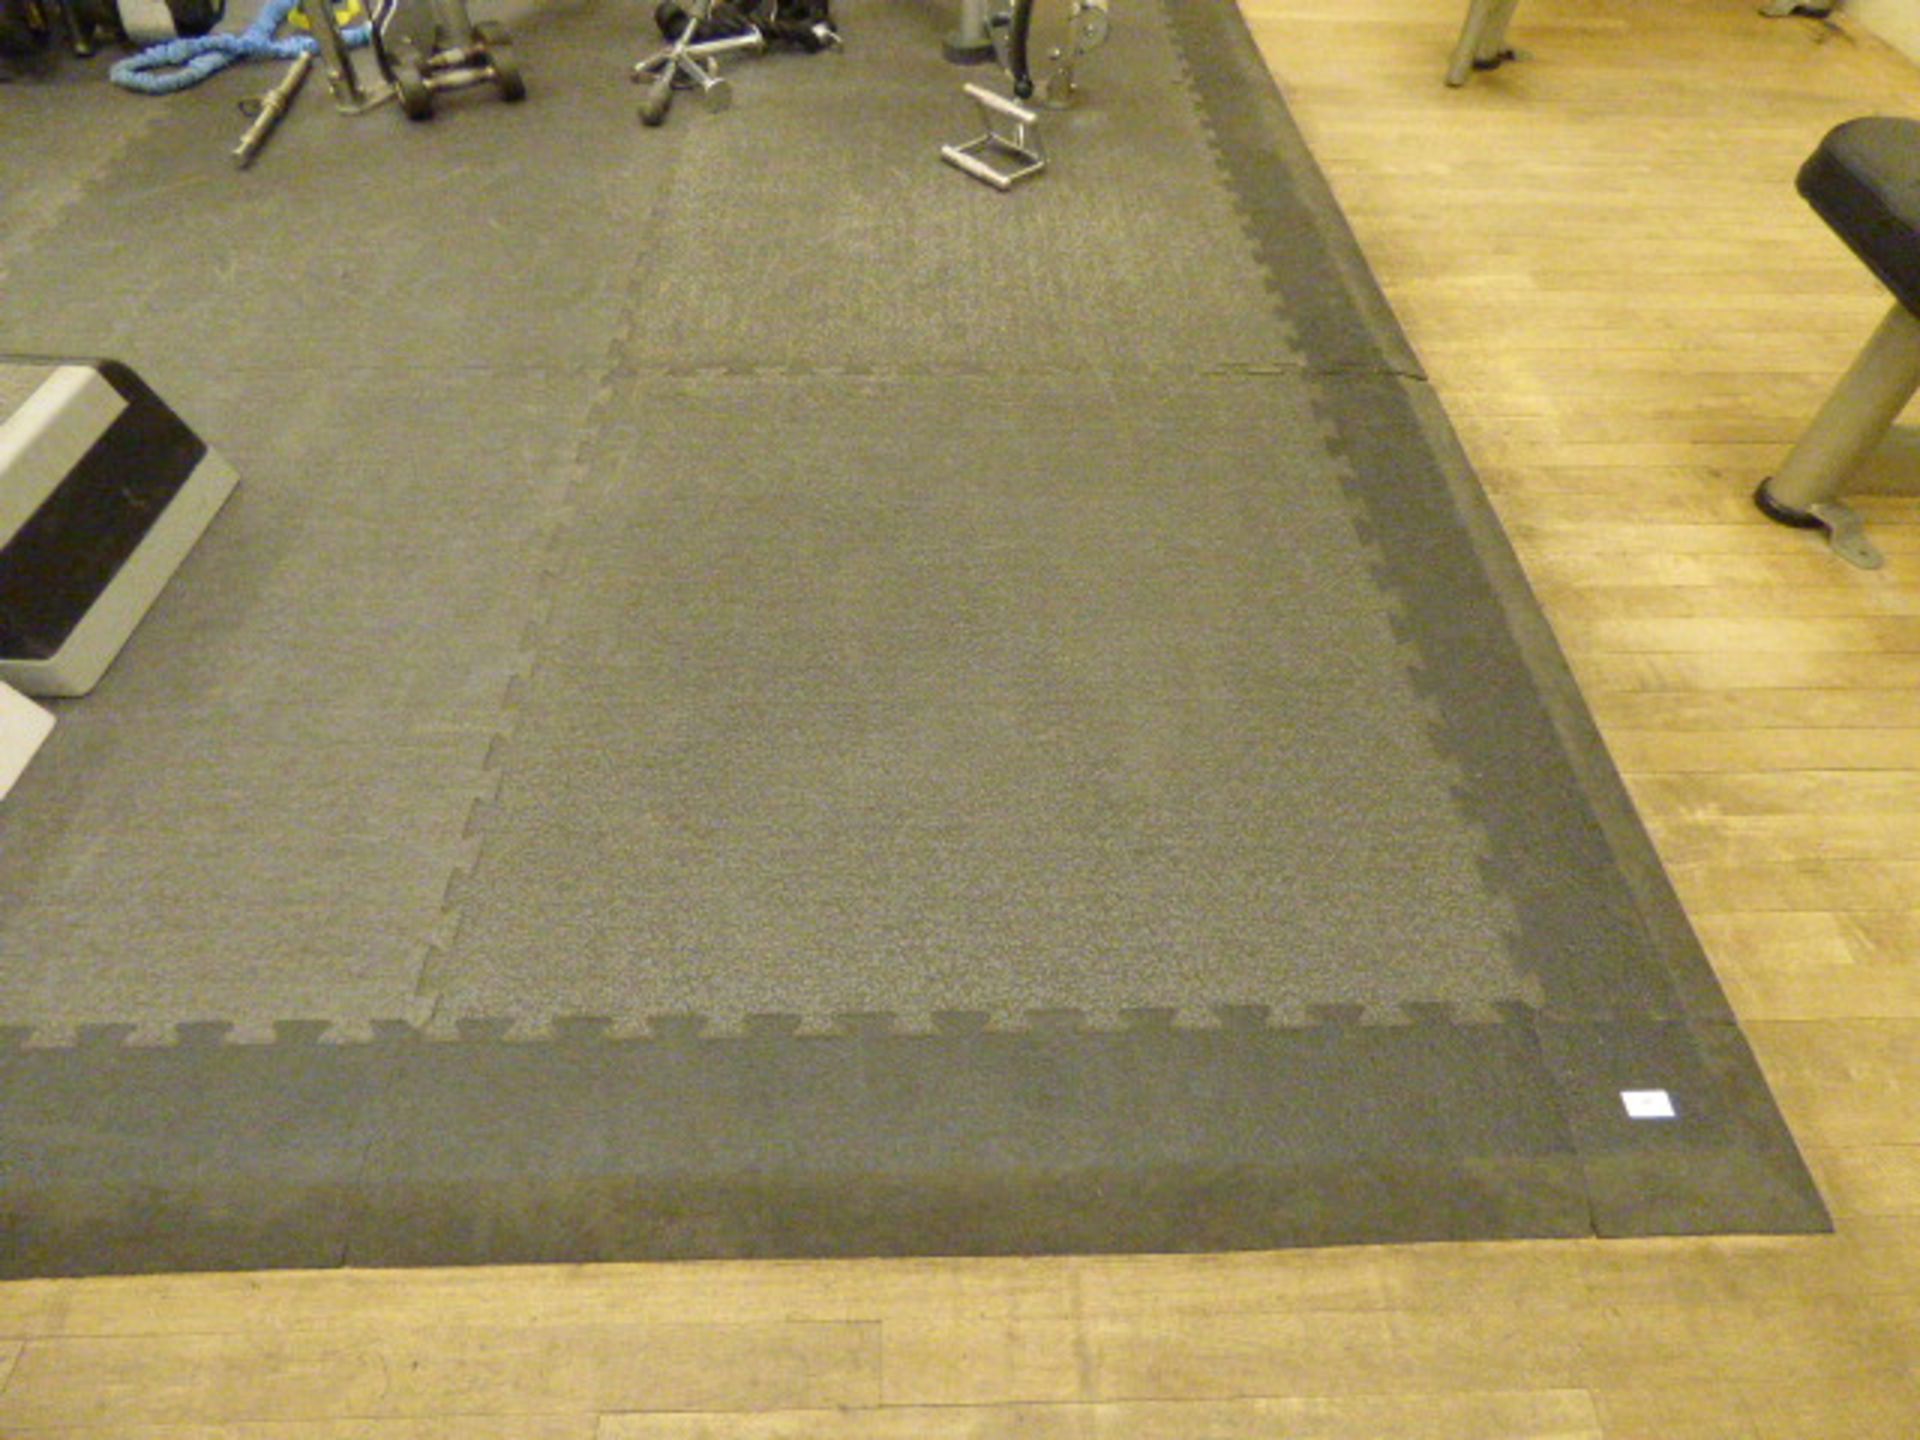 *Gymnasium rubber matting 21 1 meter square tiles samford edging